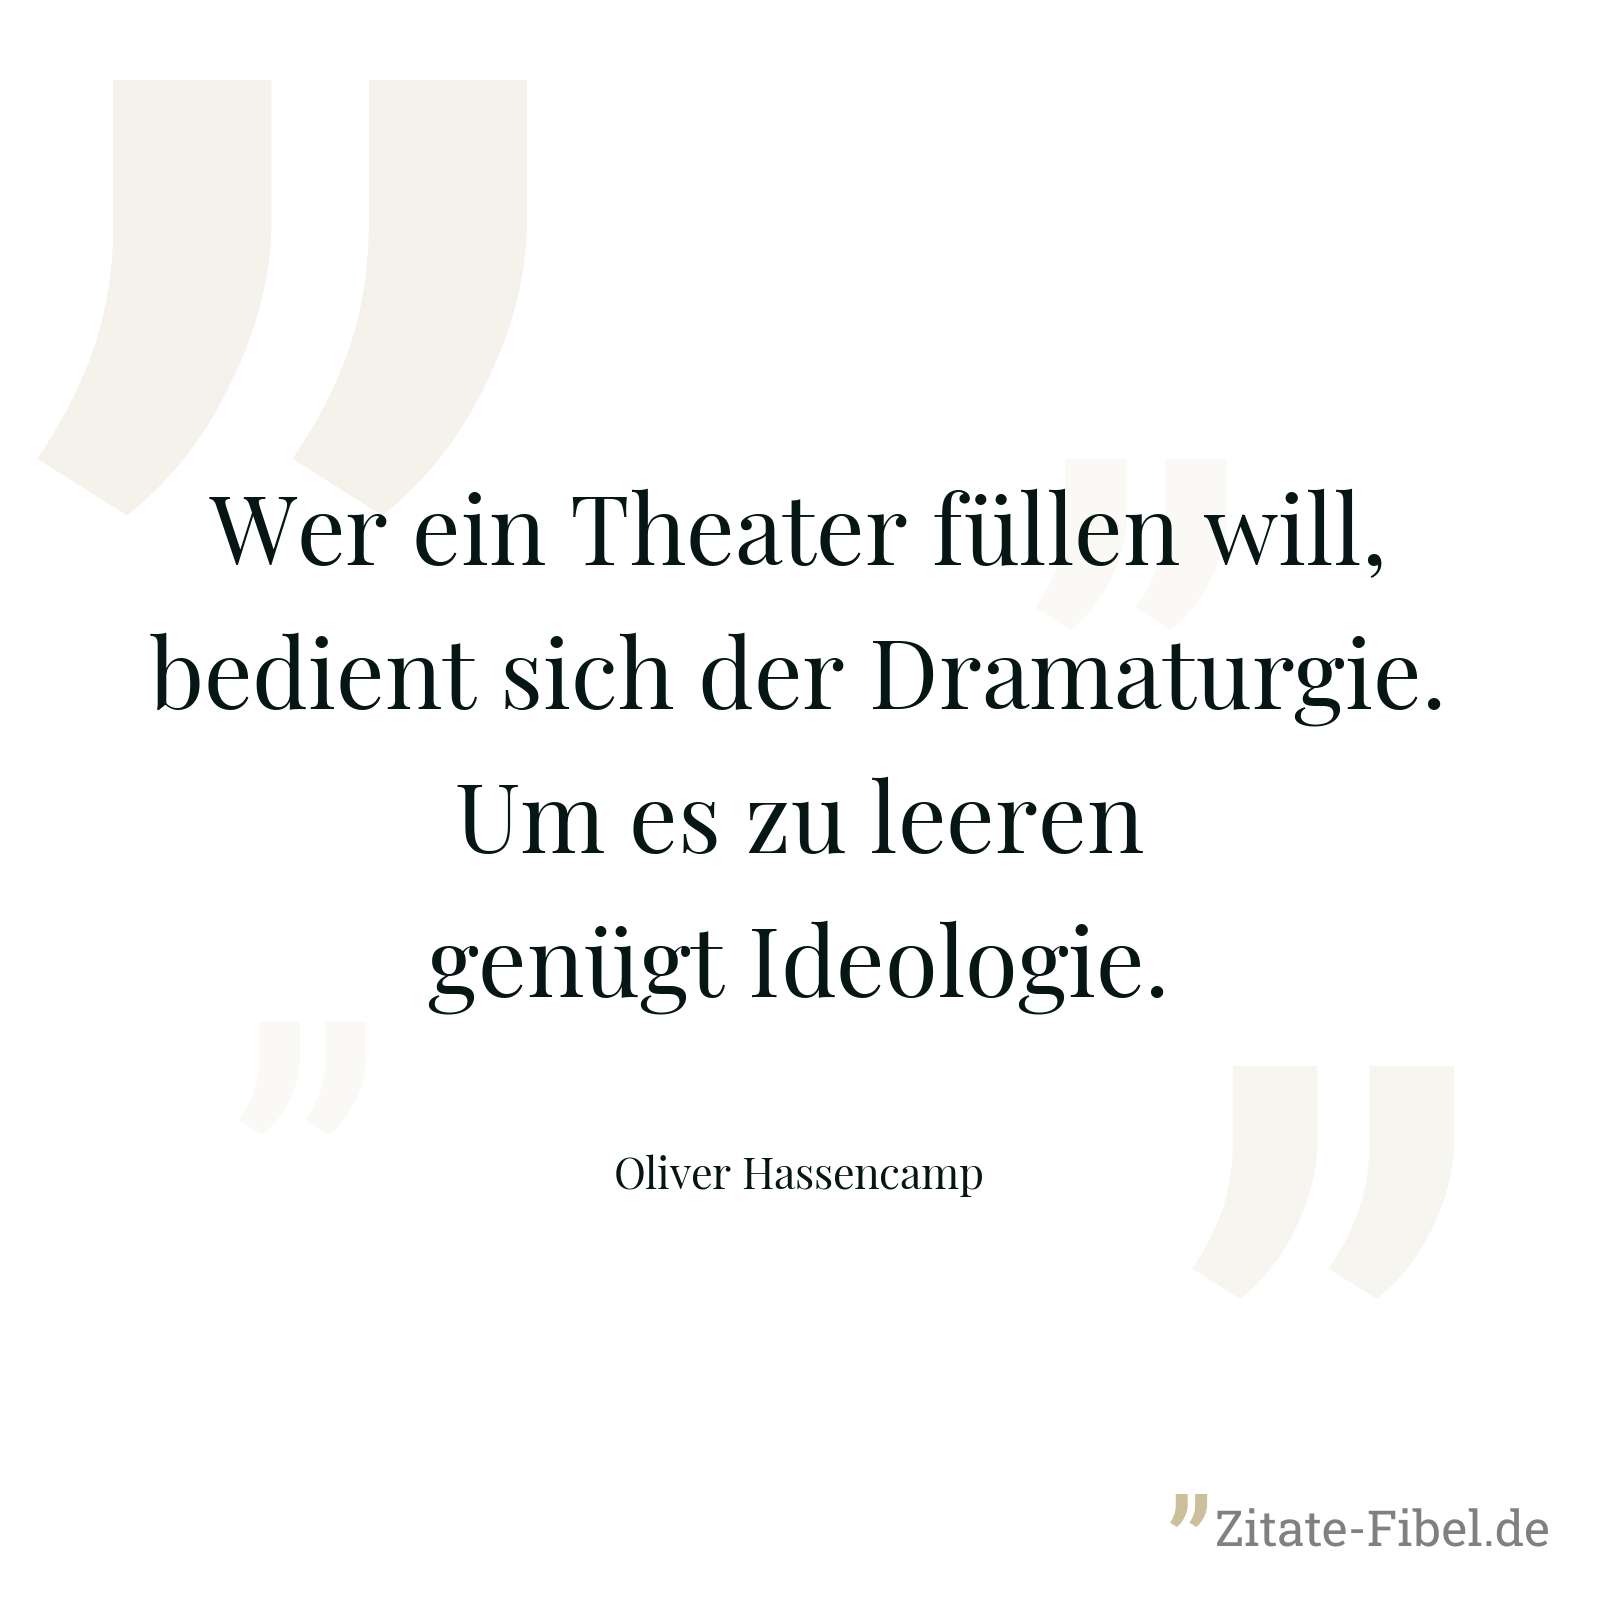 Wer ein Theater füllen will, bedient sich der Dramaturgie. Um es zu leeren genügt Ideologie. - Oliver Hassencamp